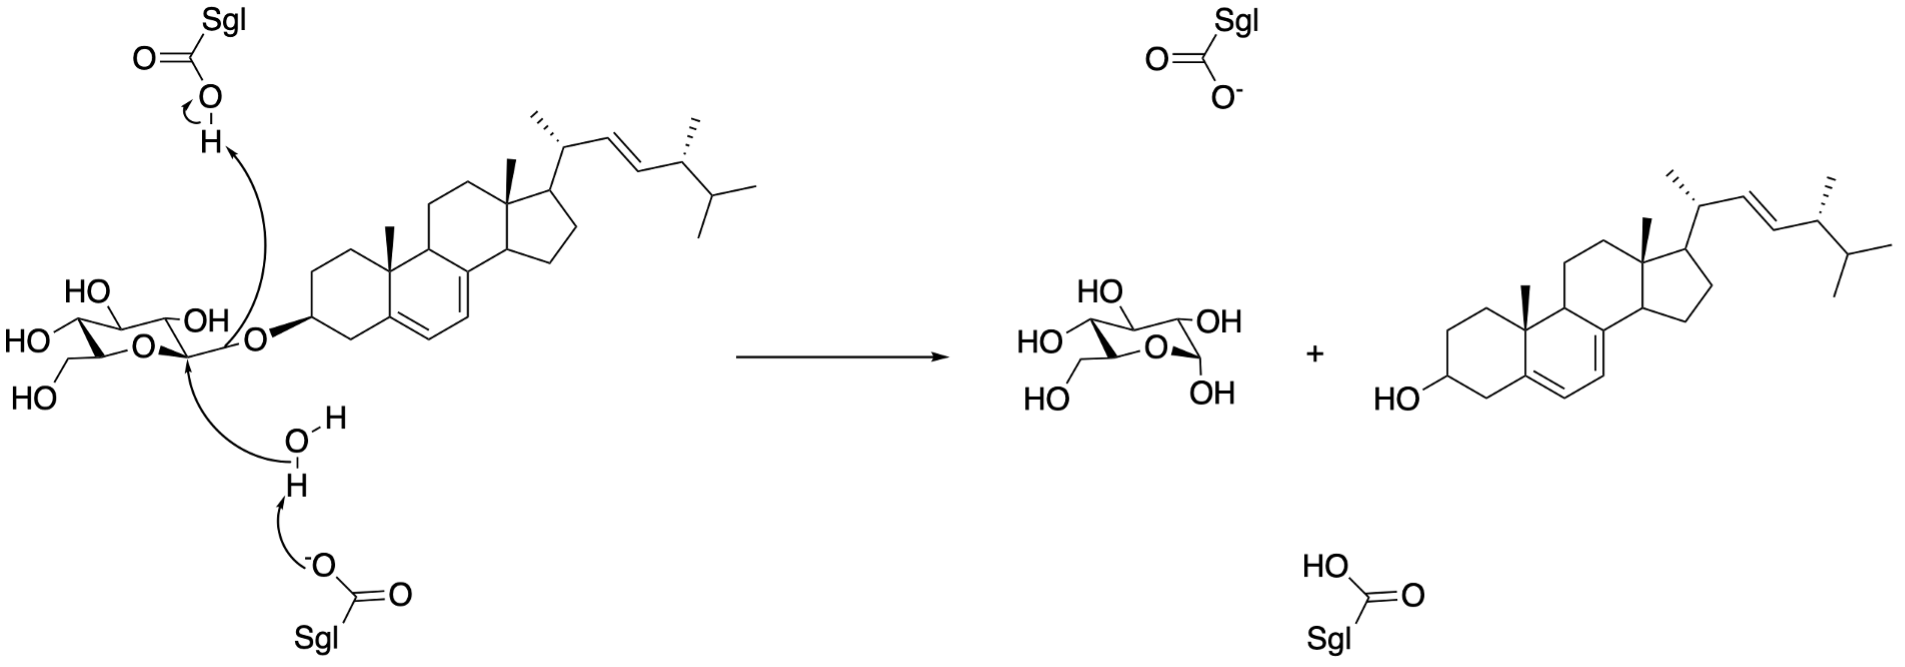 ErgGlc hydrolysis by sterylglucosidase